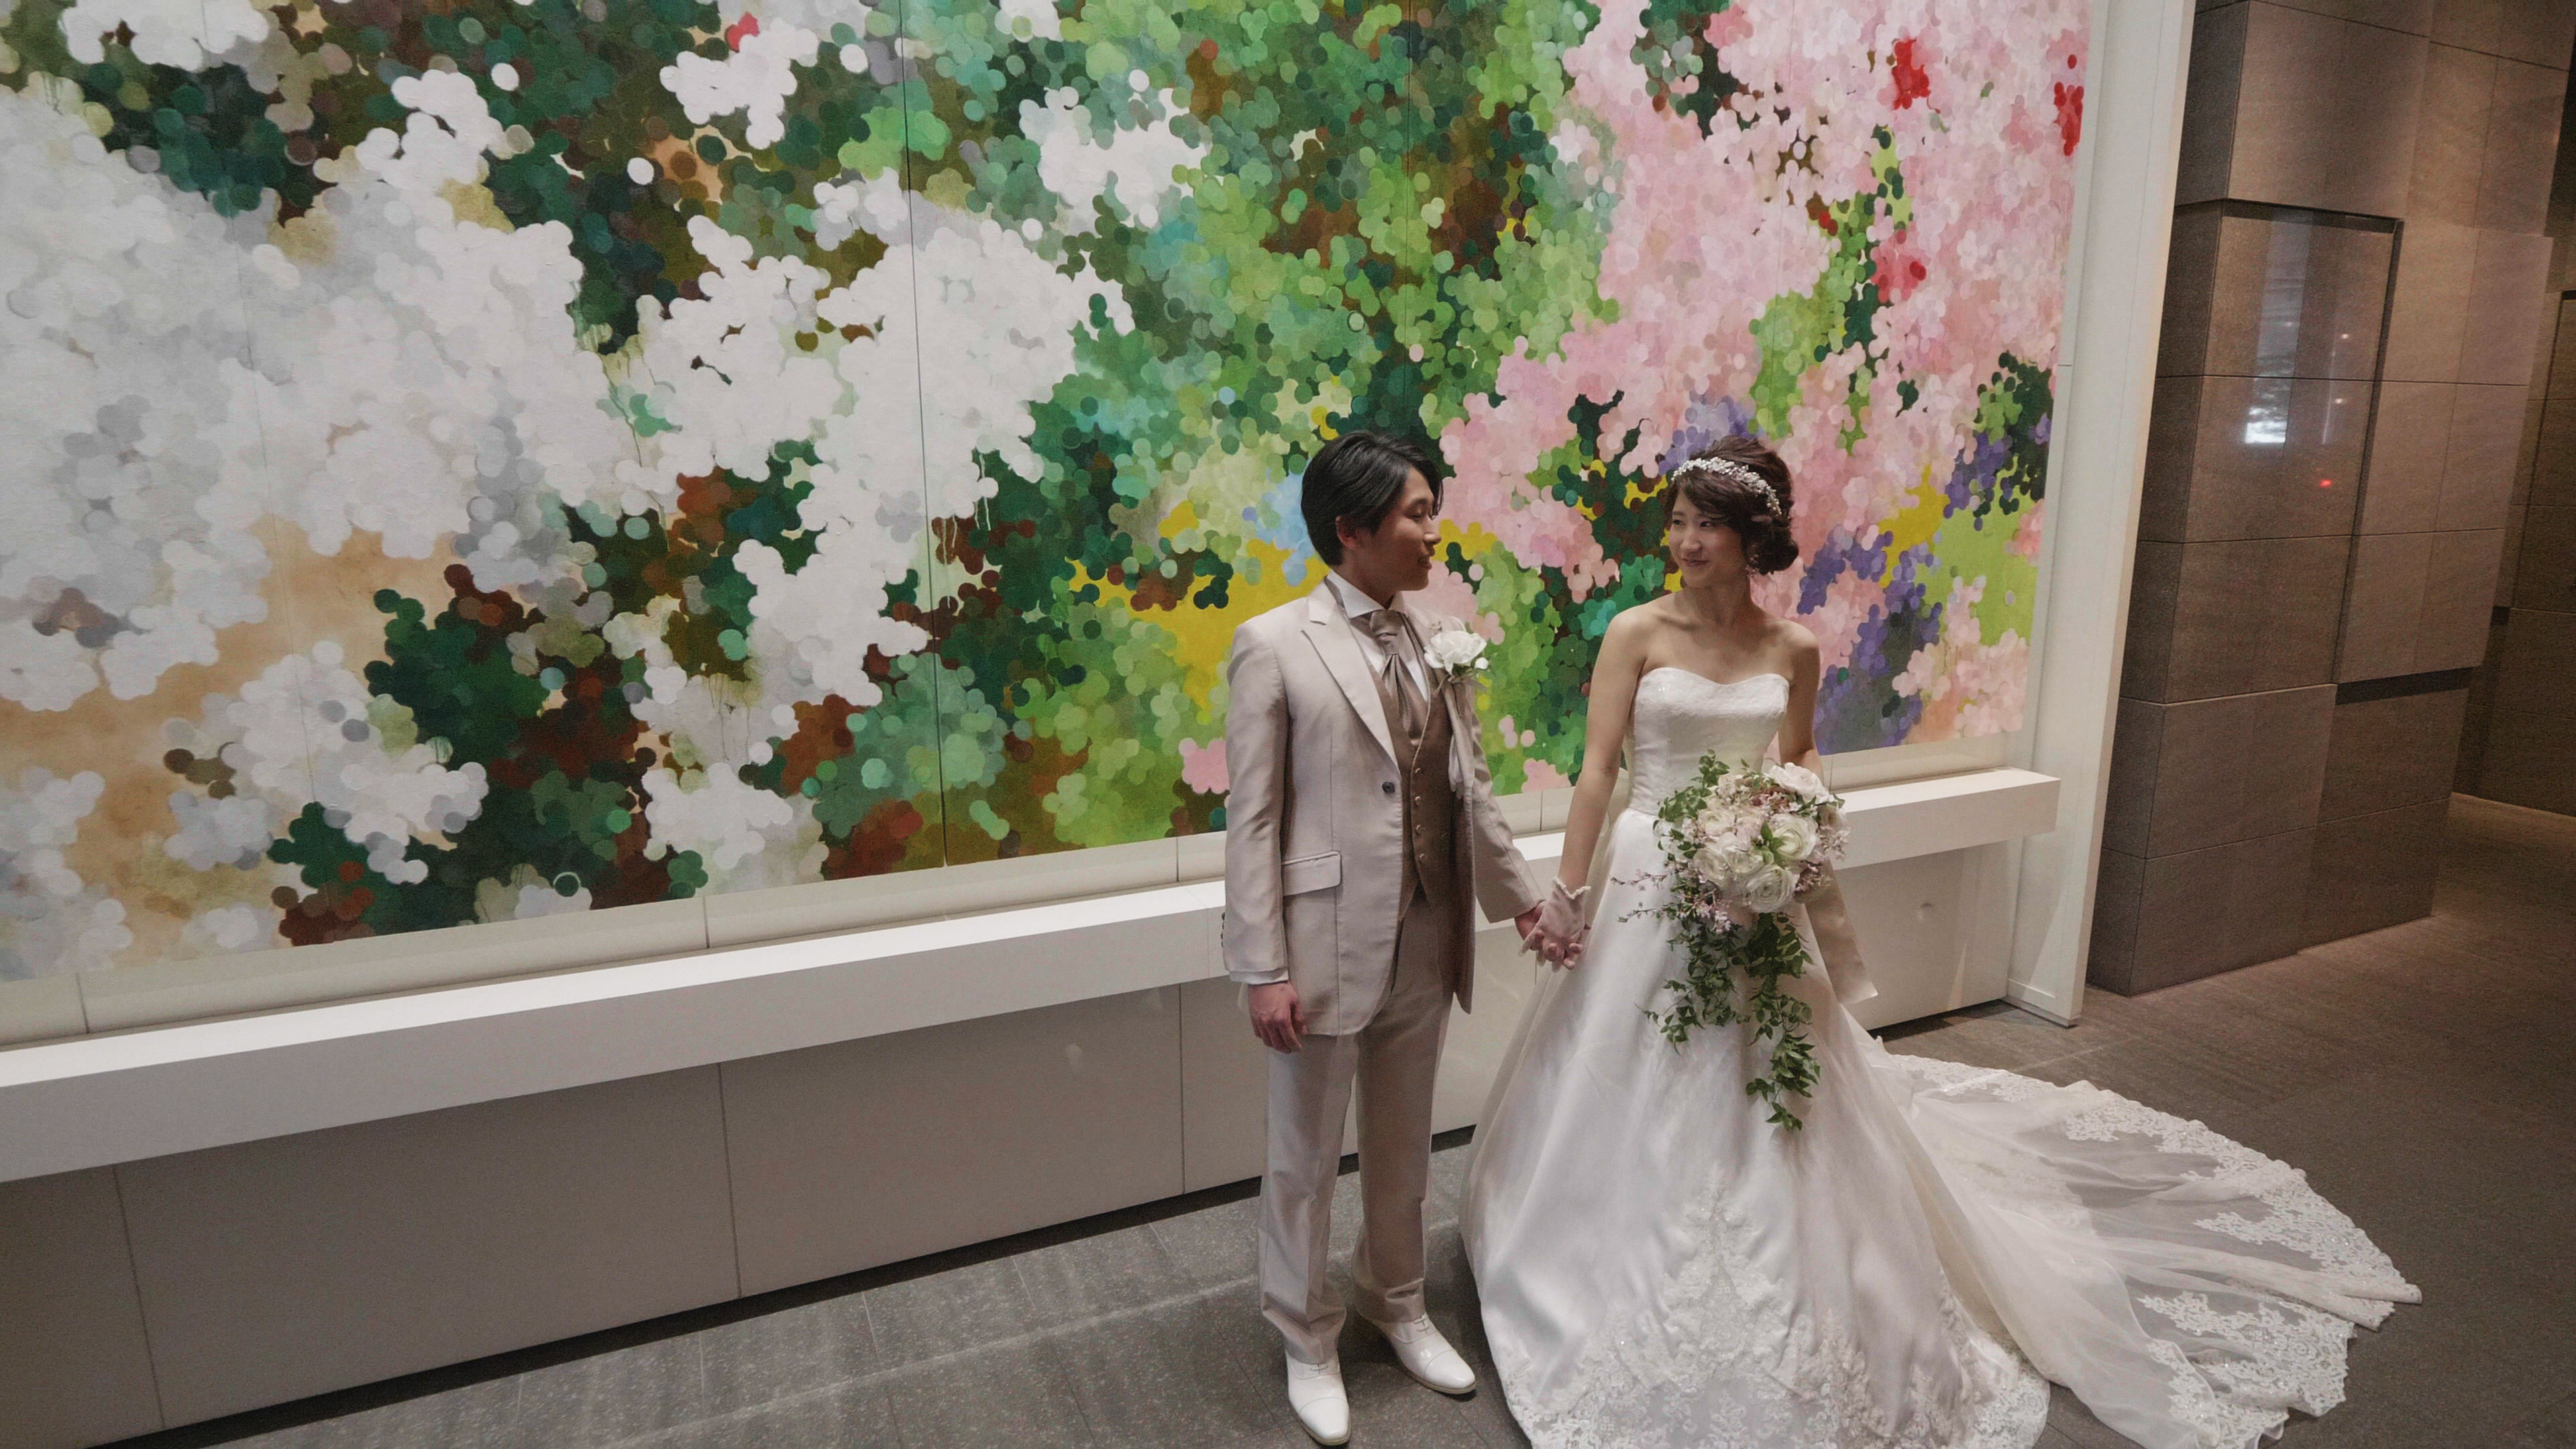 3rdeyeproject 福島市 郡山 仙台 結婚式 ビデオ ウェディング ムービー WEDDING ANdAZ Tokyo